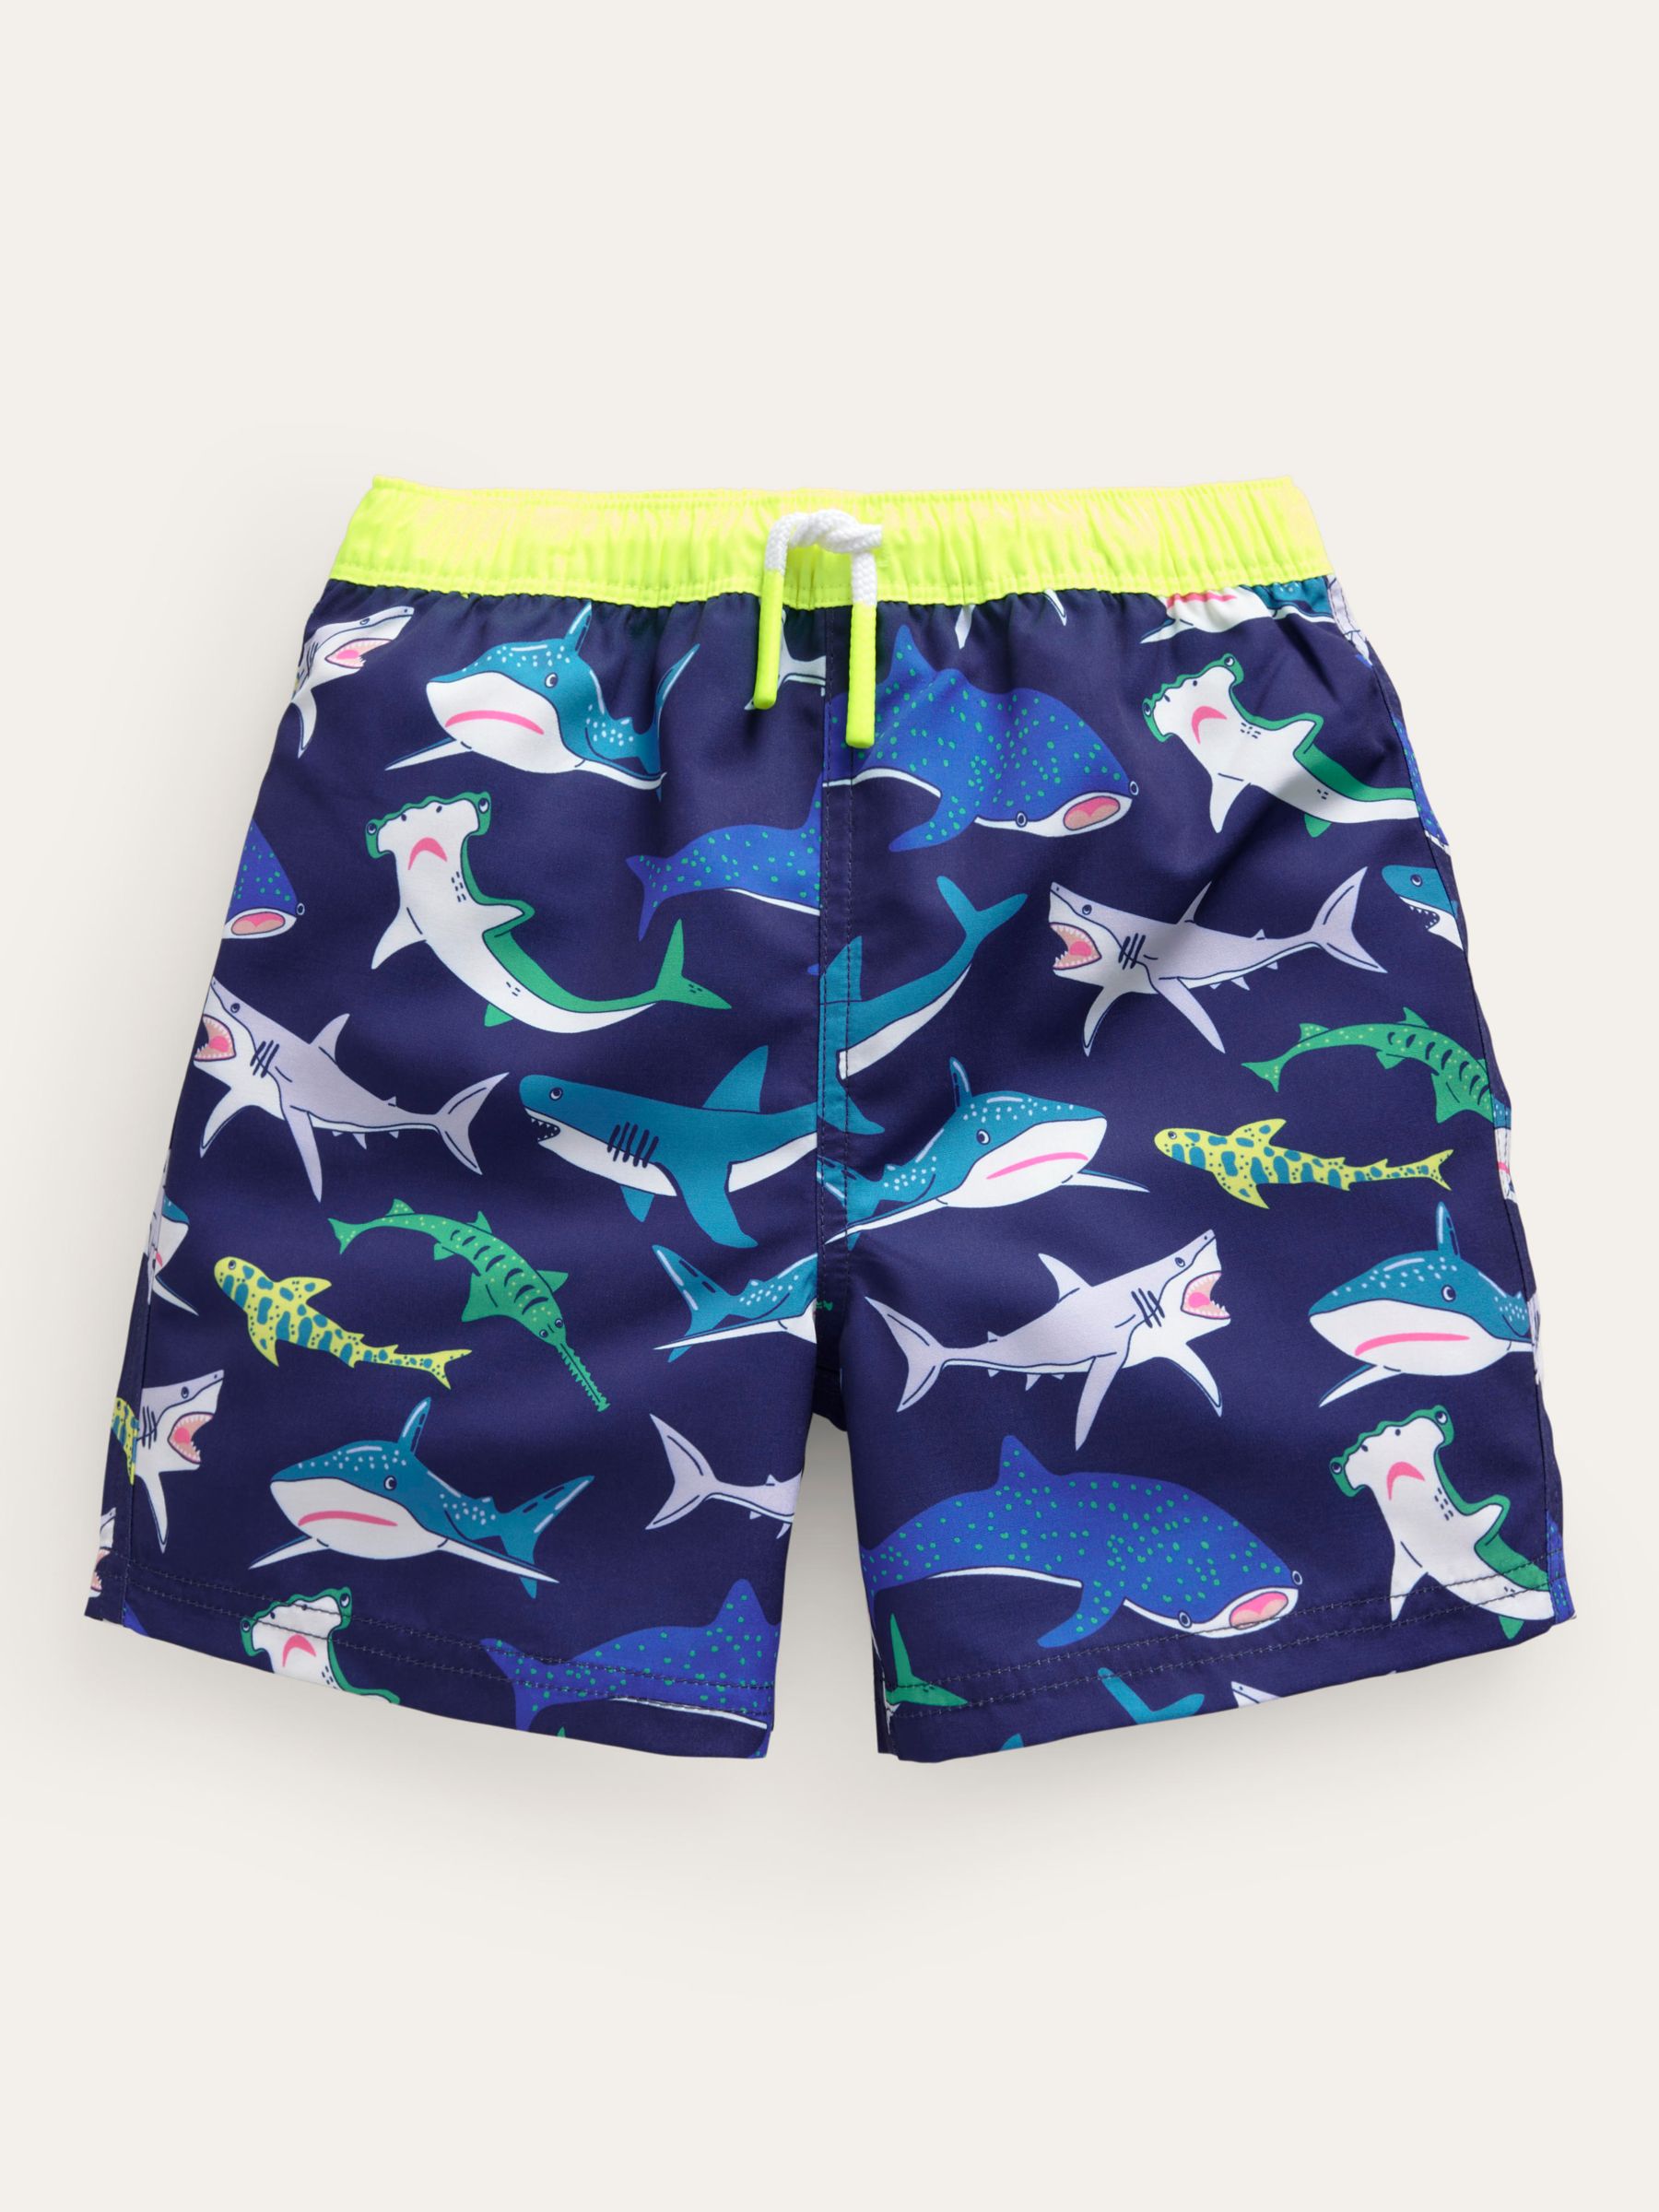 Mini Boden Kids' Printed Swim Shorts, Multi Sharks at John Lewis & Partners